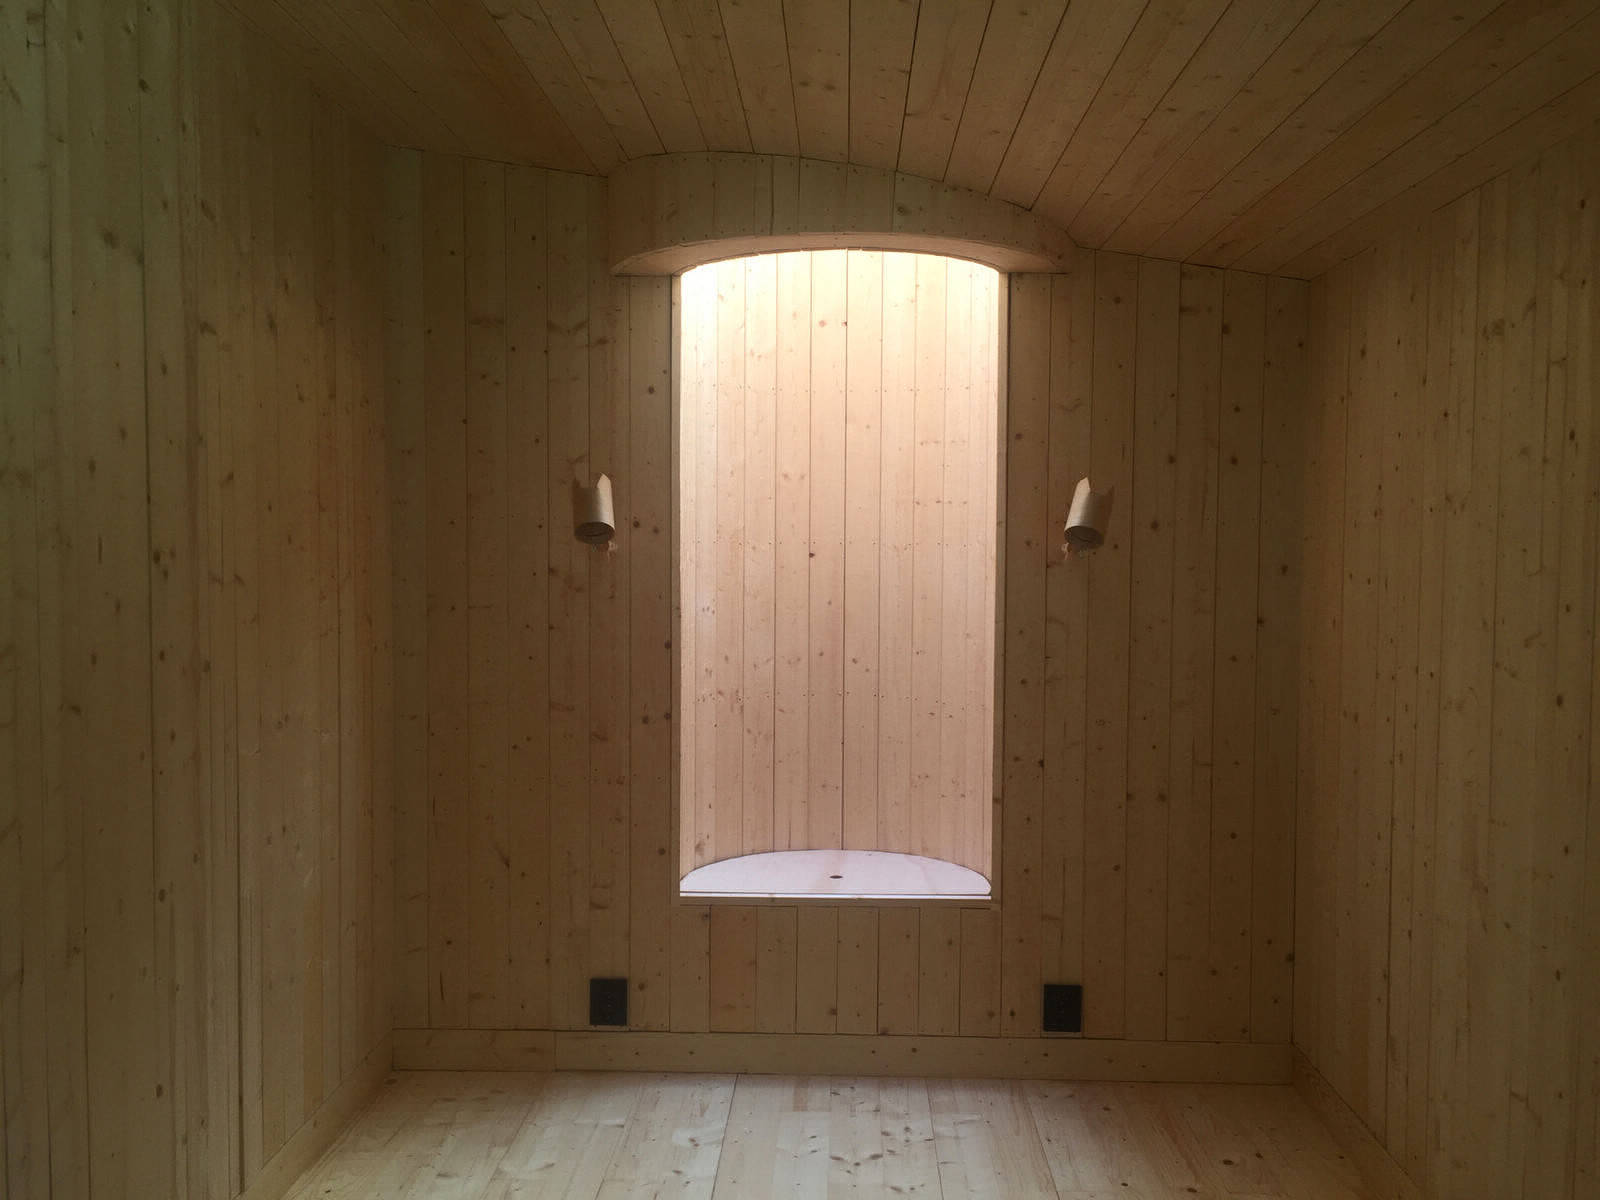 Уютный домик площадью 18 квадратных метров на островке Стокгольмского архипелага